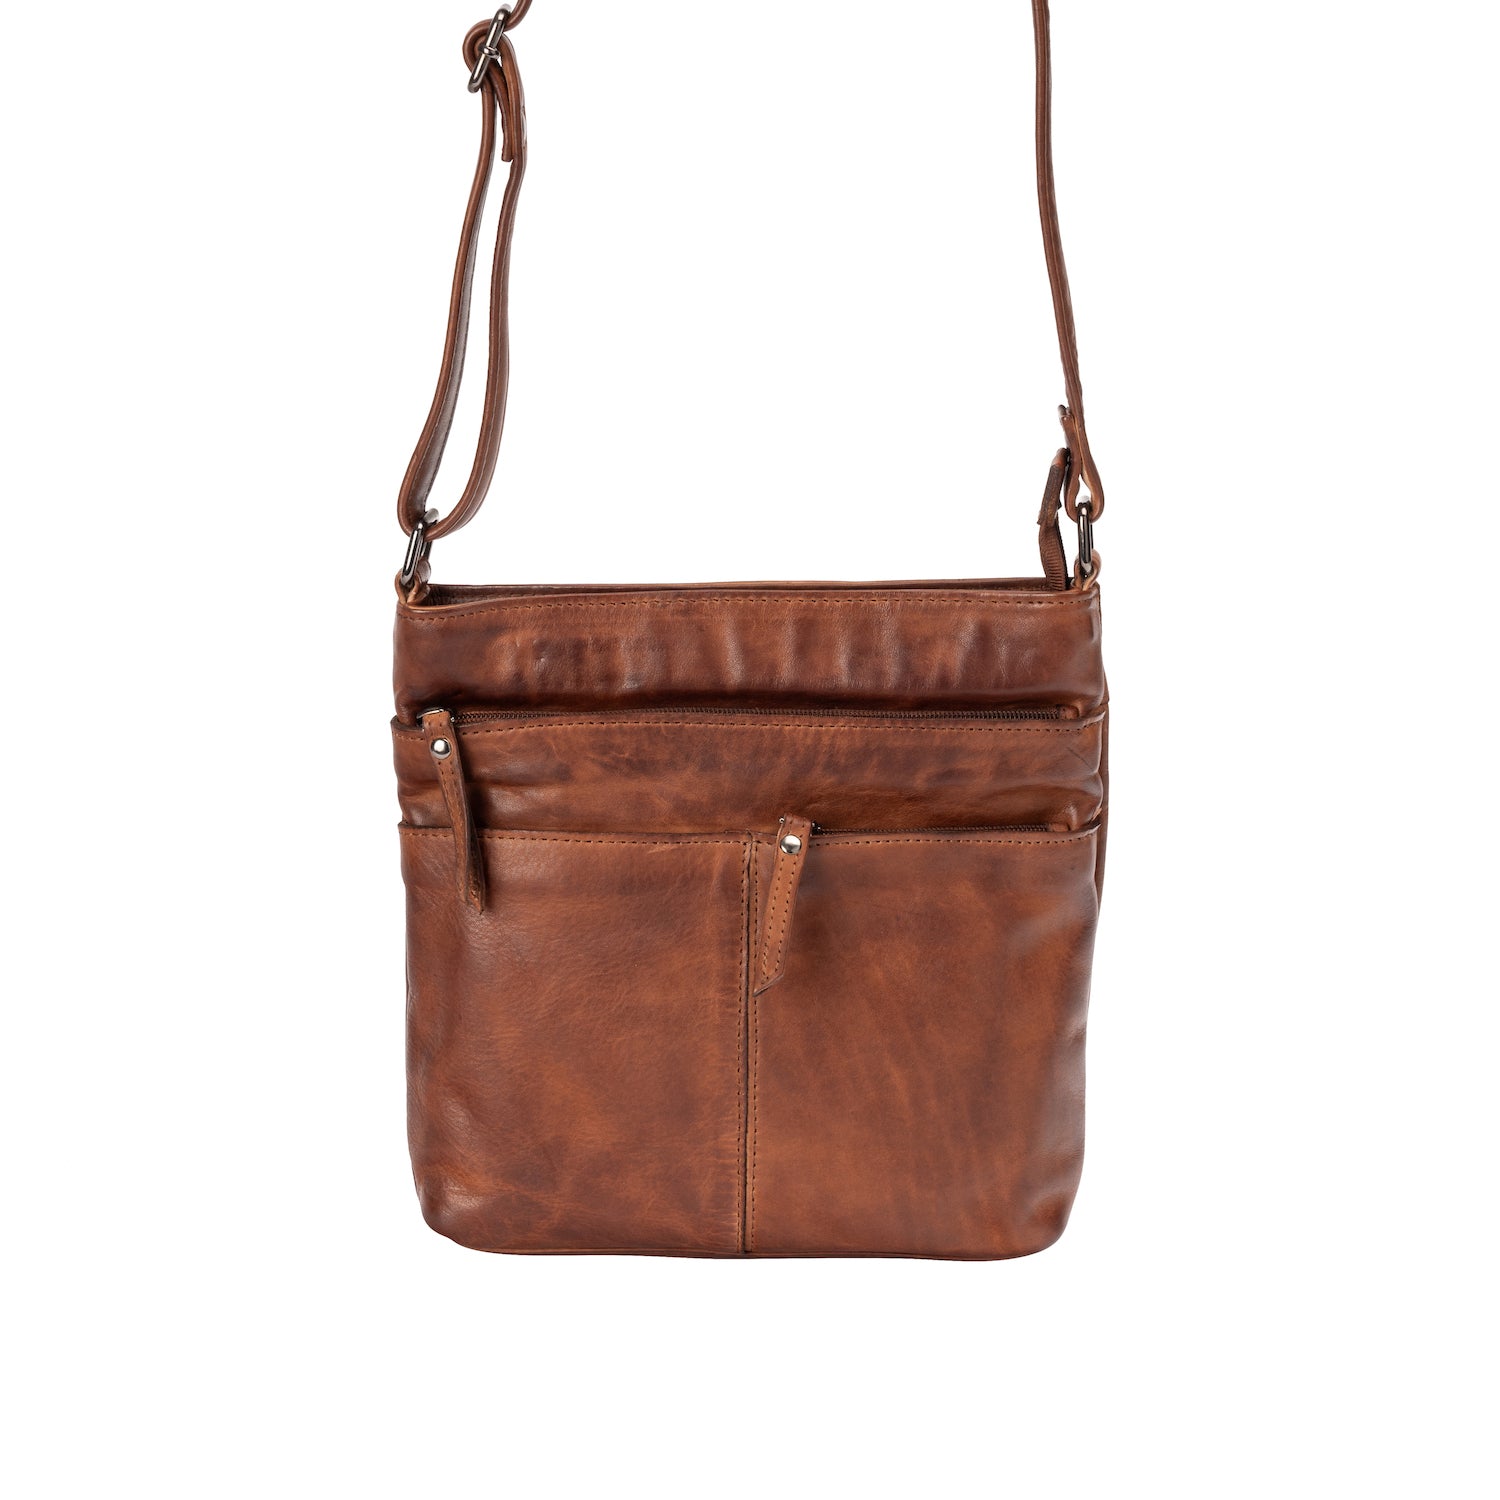 Leather Shoulder Bag GW6833 Cognac - Leather Greenwood Bag | The Greenwood Leather Online Shop Australia